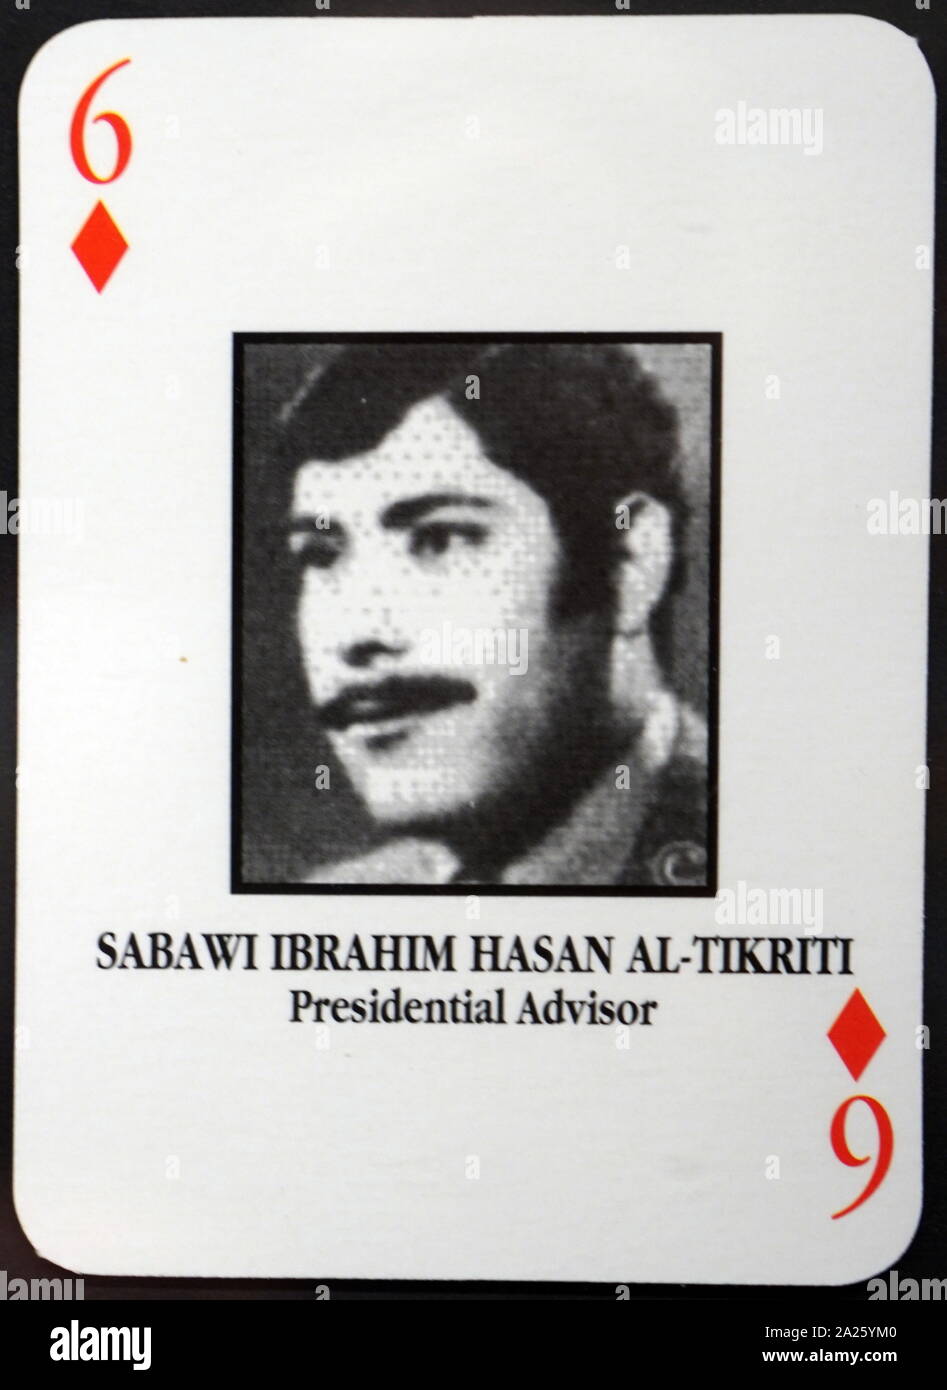 Die meisten - wollte irakische Spielkarten - Sabawi Ibrahim Hasan Al-Tikriti (Berater des Präsidenten). Das US-Militär entwickelte eine Reihe von Spielkarten zu helfen Truppe die meisten - die Mitglieder von Präsident Saddam Husseins Regierung während der Invasion 2003 im Irak zu identifizieren. Stockfoto